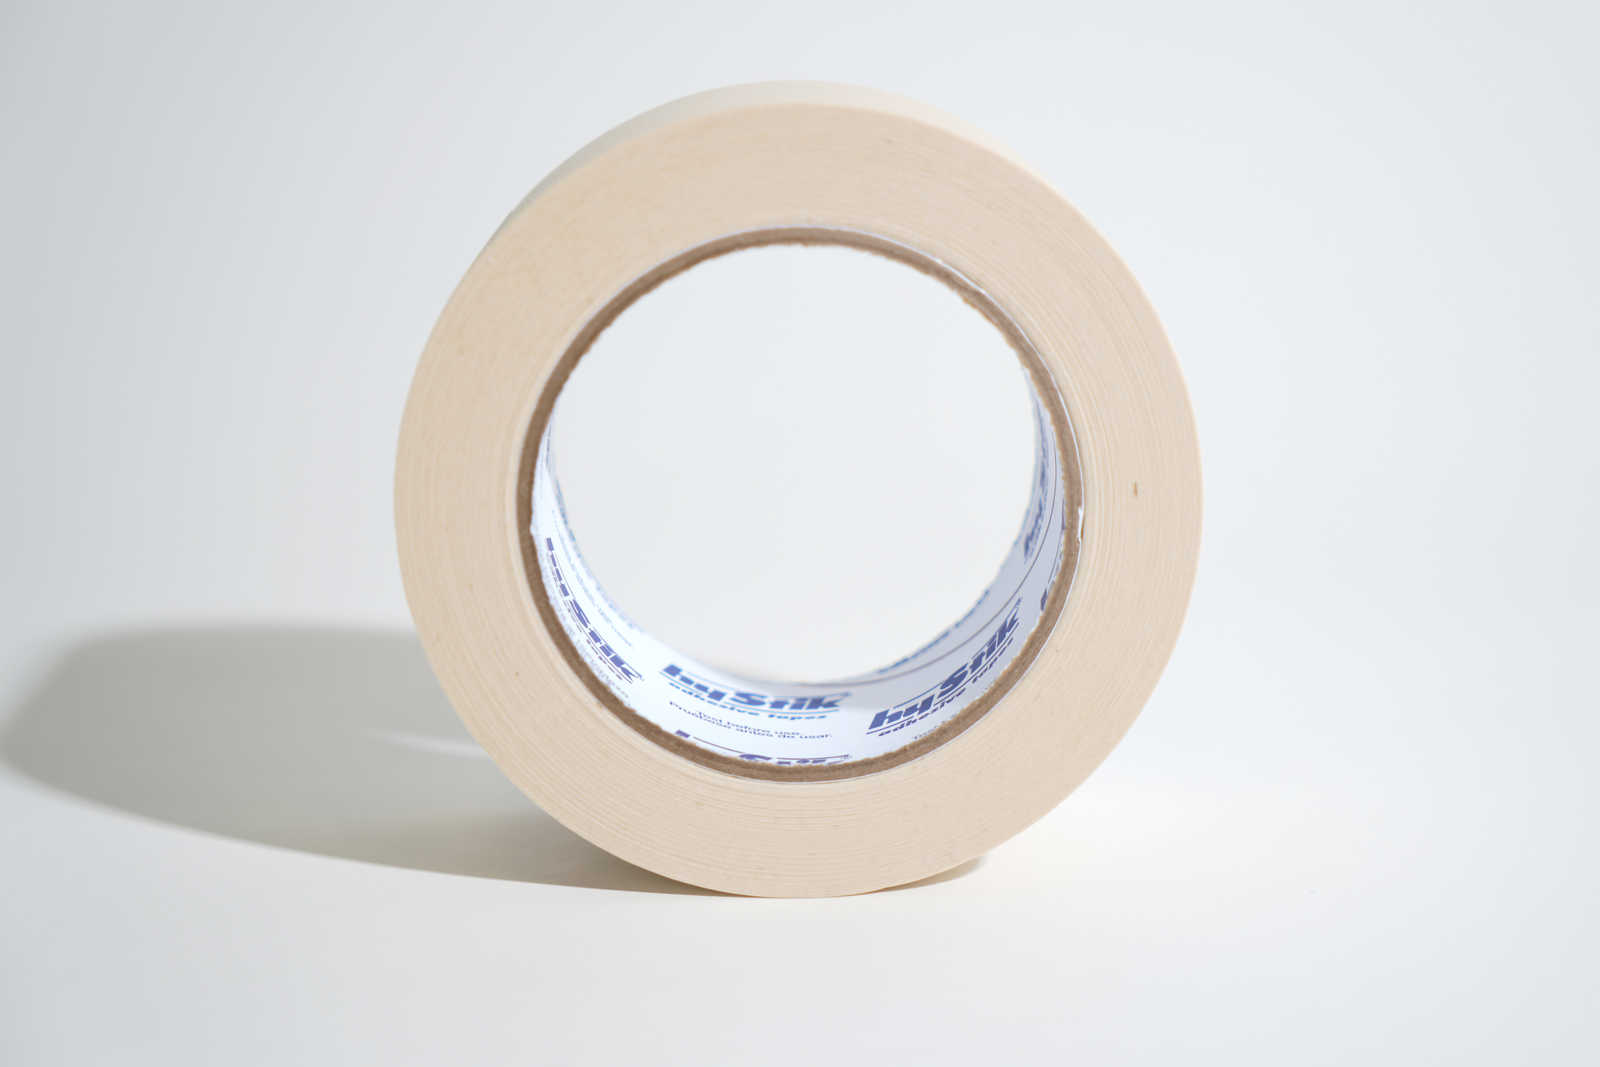             Crepe tape 50mm x 50m in cream
        